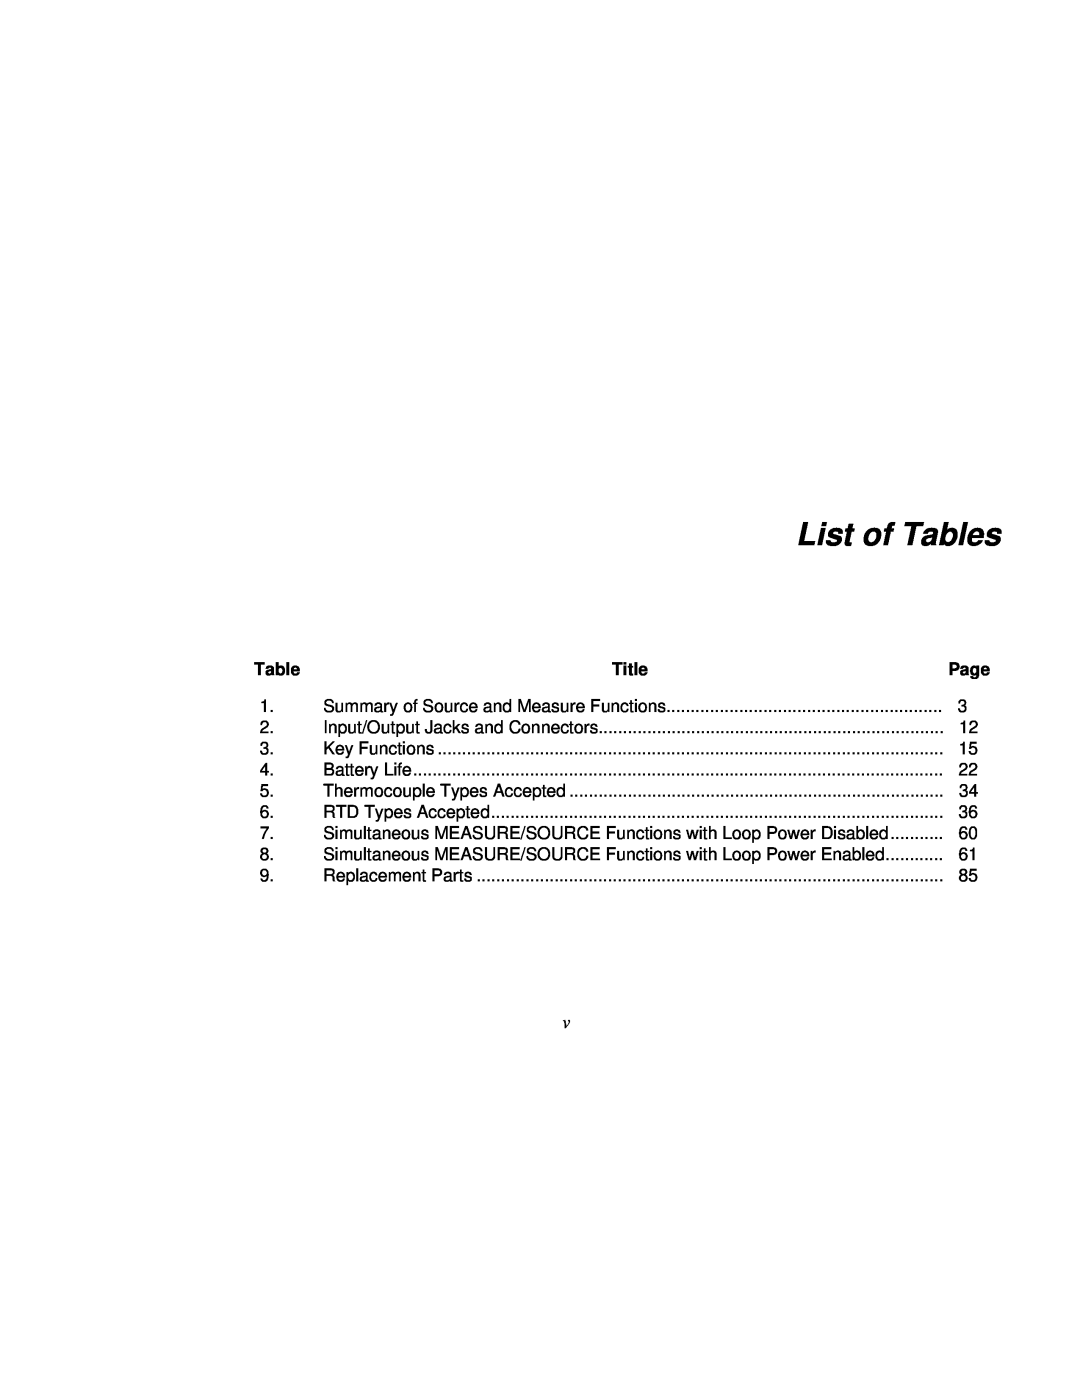 Fluke Rev. 4 user manual List of Tables, Title 